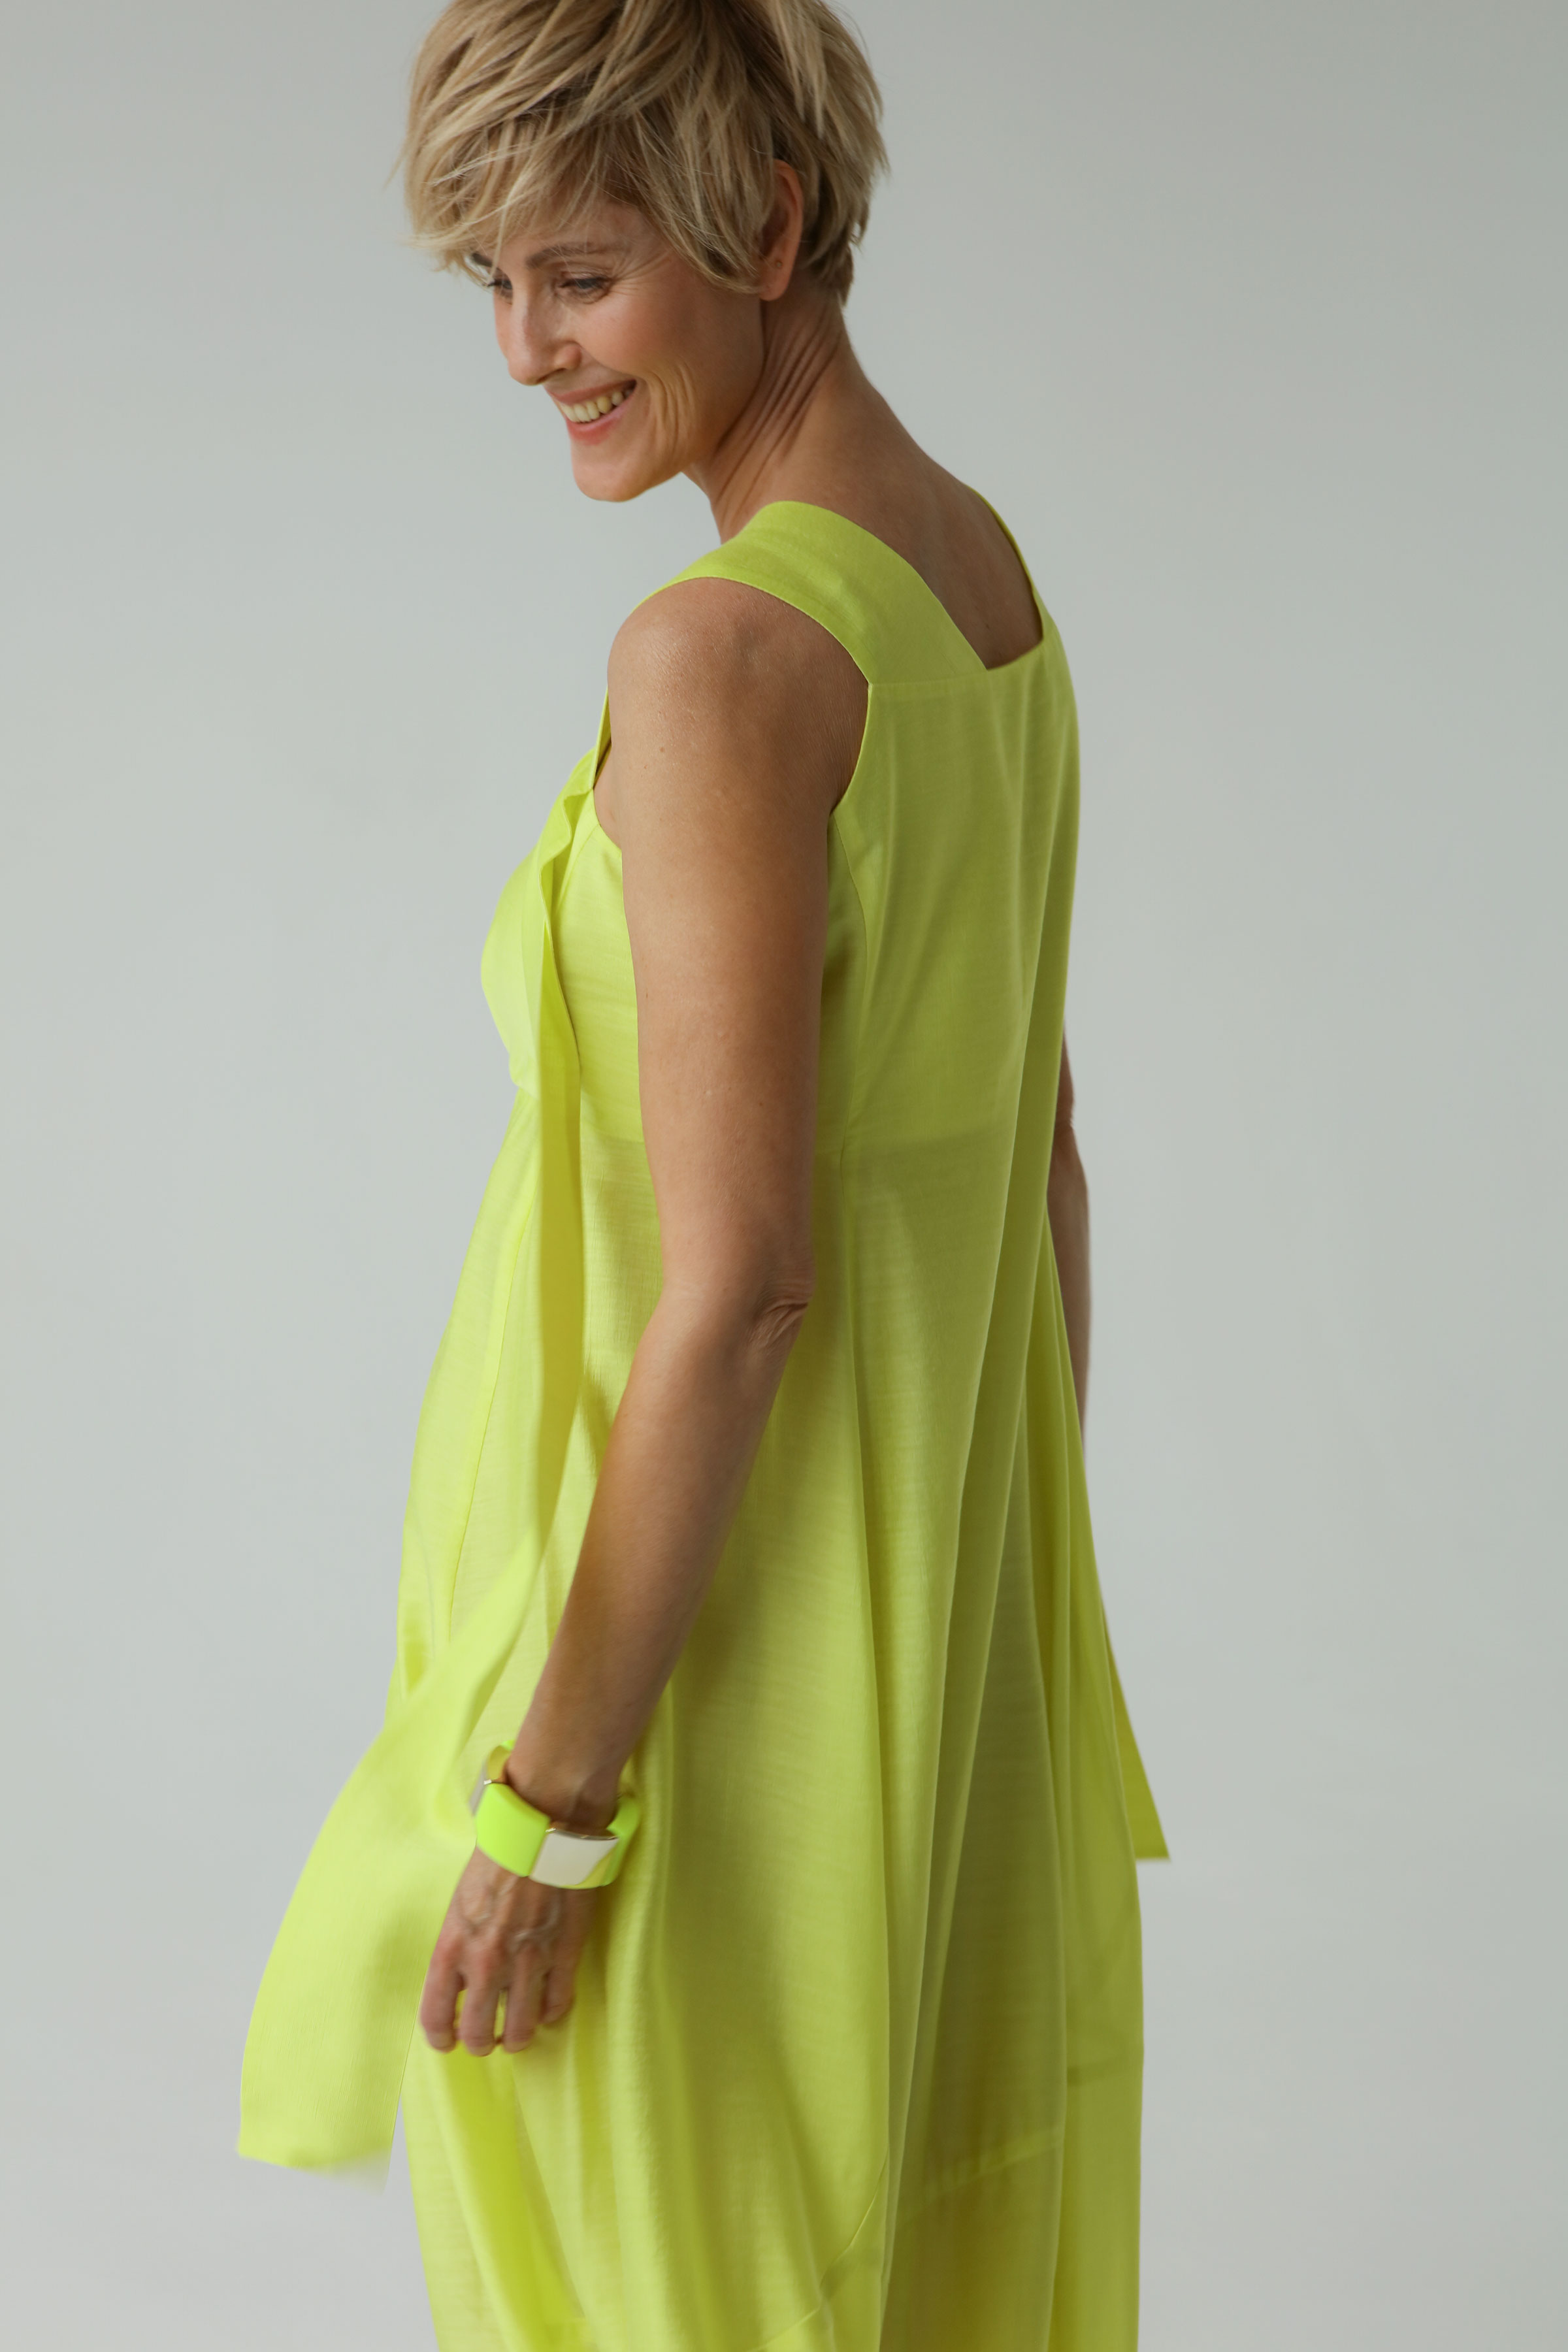 Платье Сарафан ленты, шёлк 59 Люминесцент (luminescent) от Lesel (Лесель)! Заказывайте по ✆ 8 (800) 777 02 37